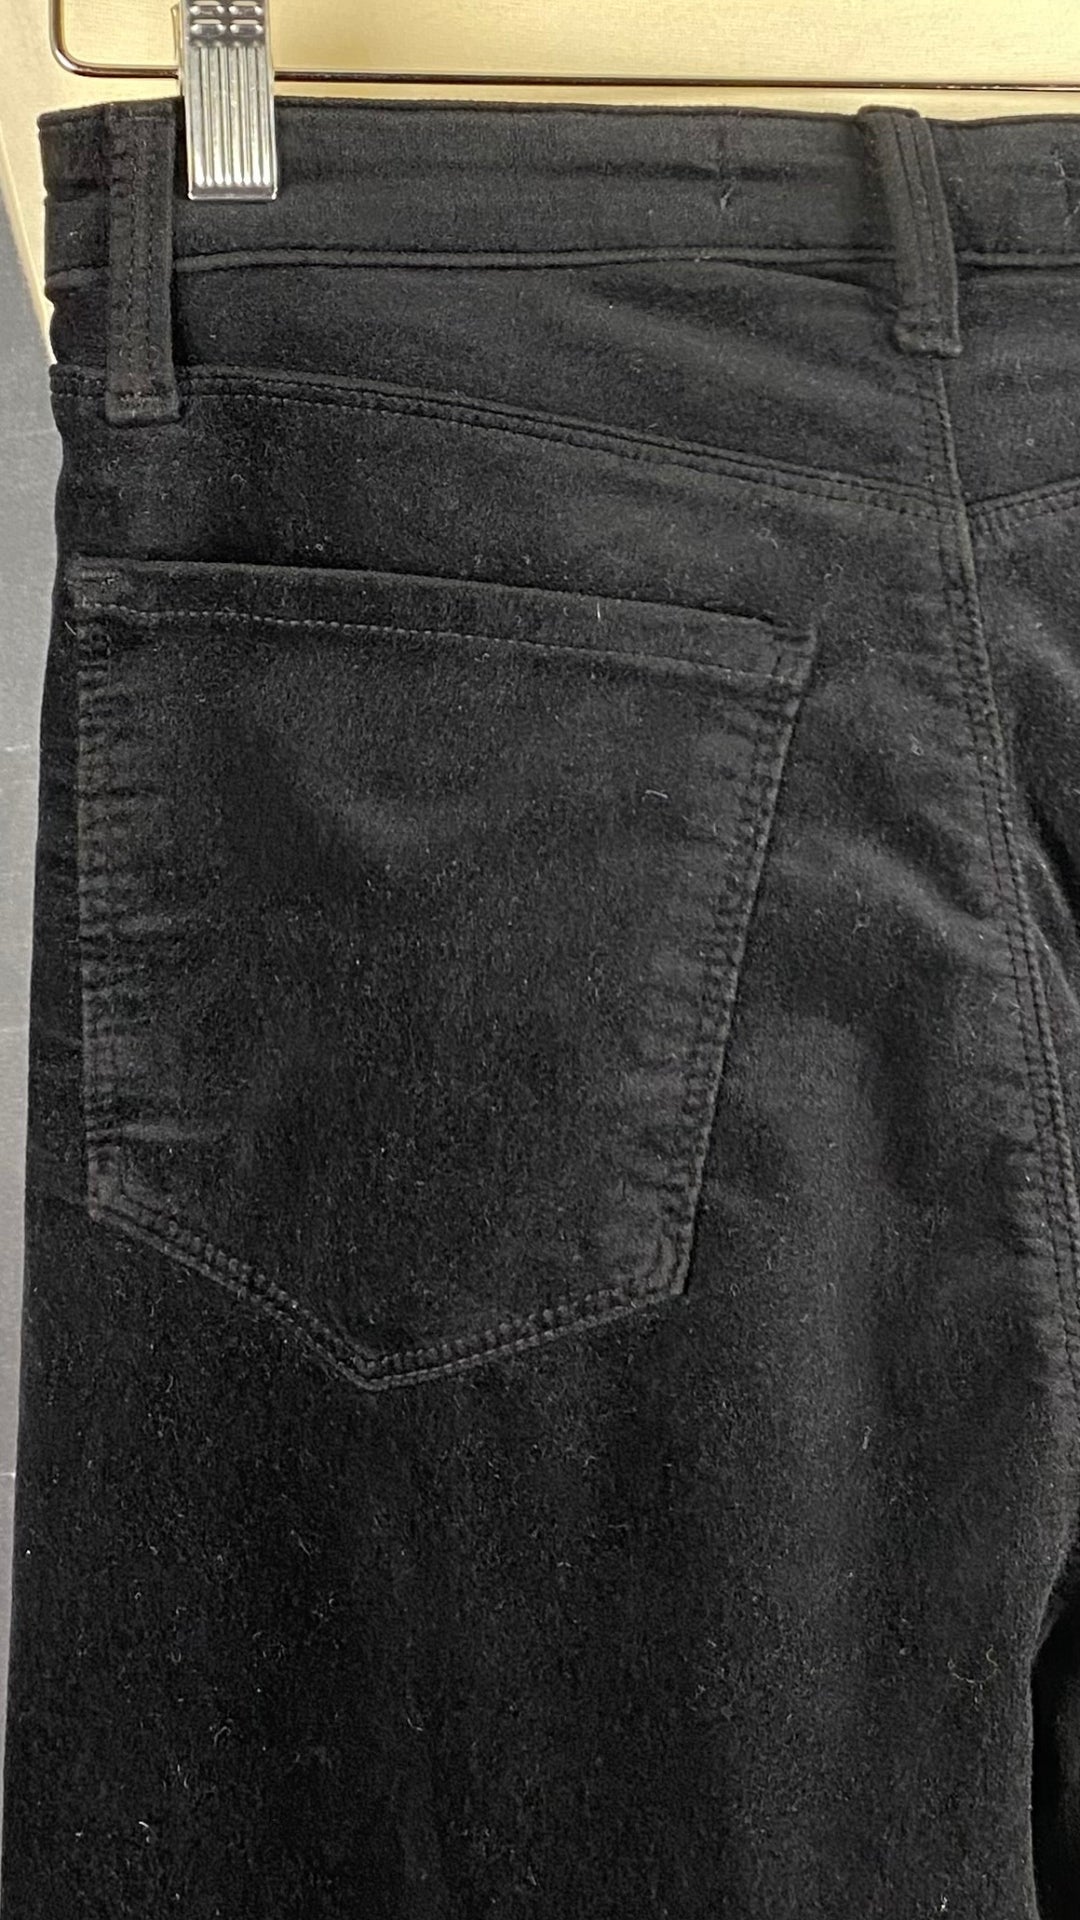 Pantalon velours noir à jambe évasée J Brand, taille 26. Vue des détails de la poche arrière.